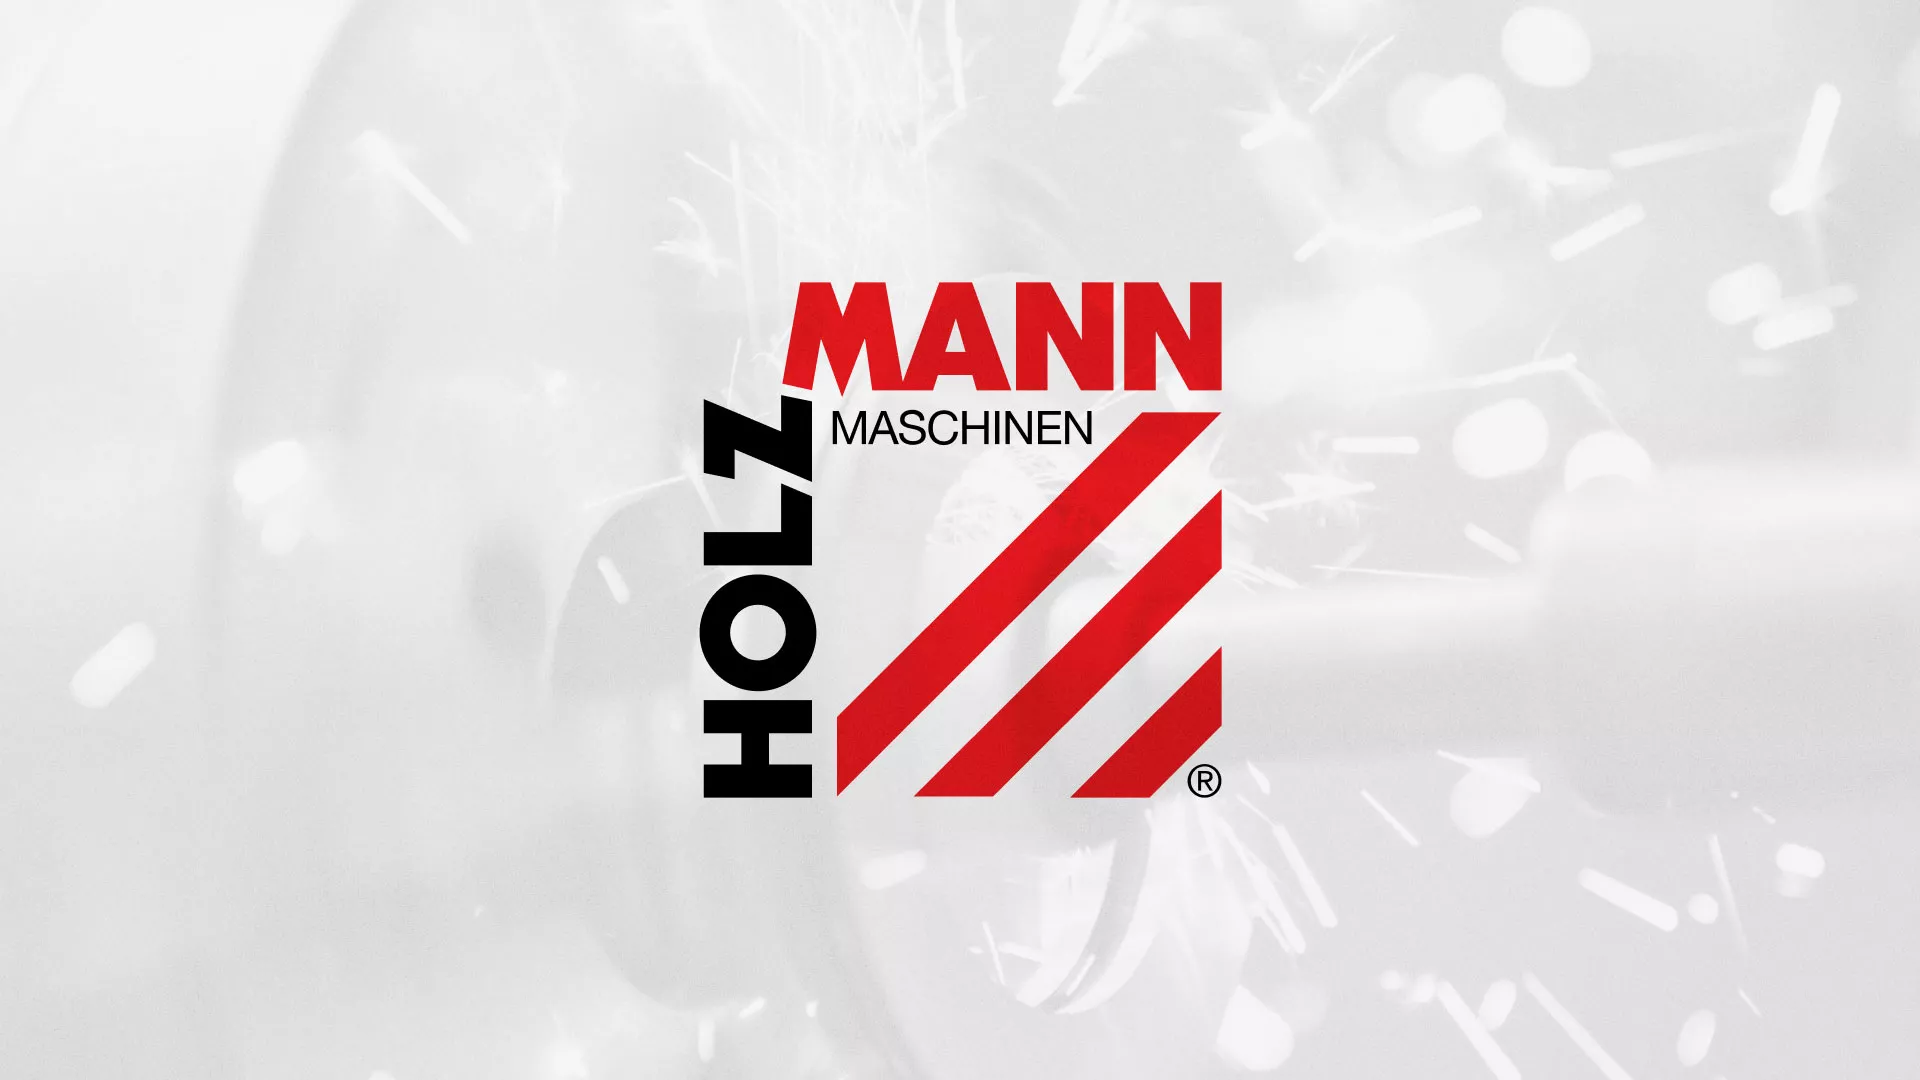 Создание сайта компании «HOLZMANN Maschinen GmbH» в Юбилейном